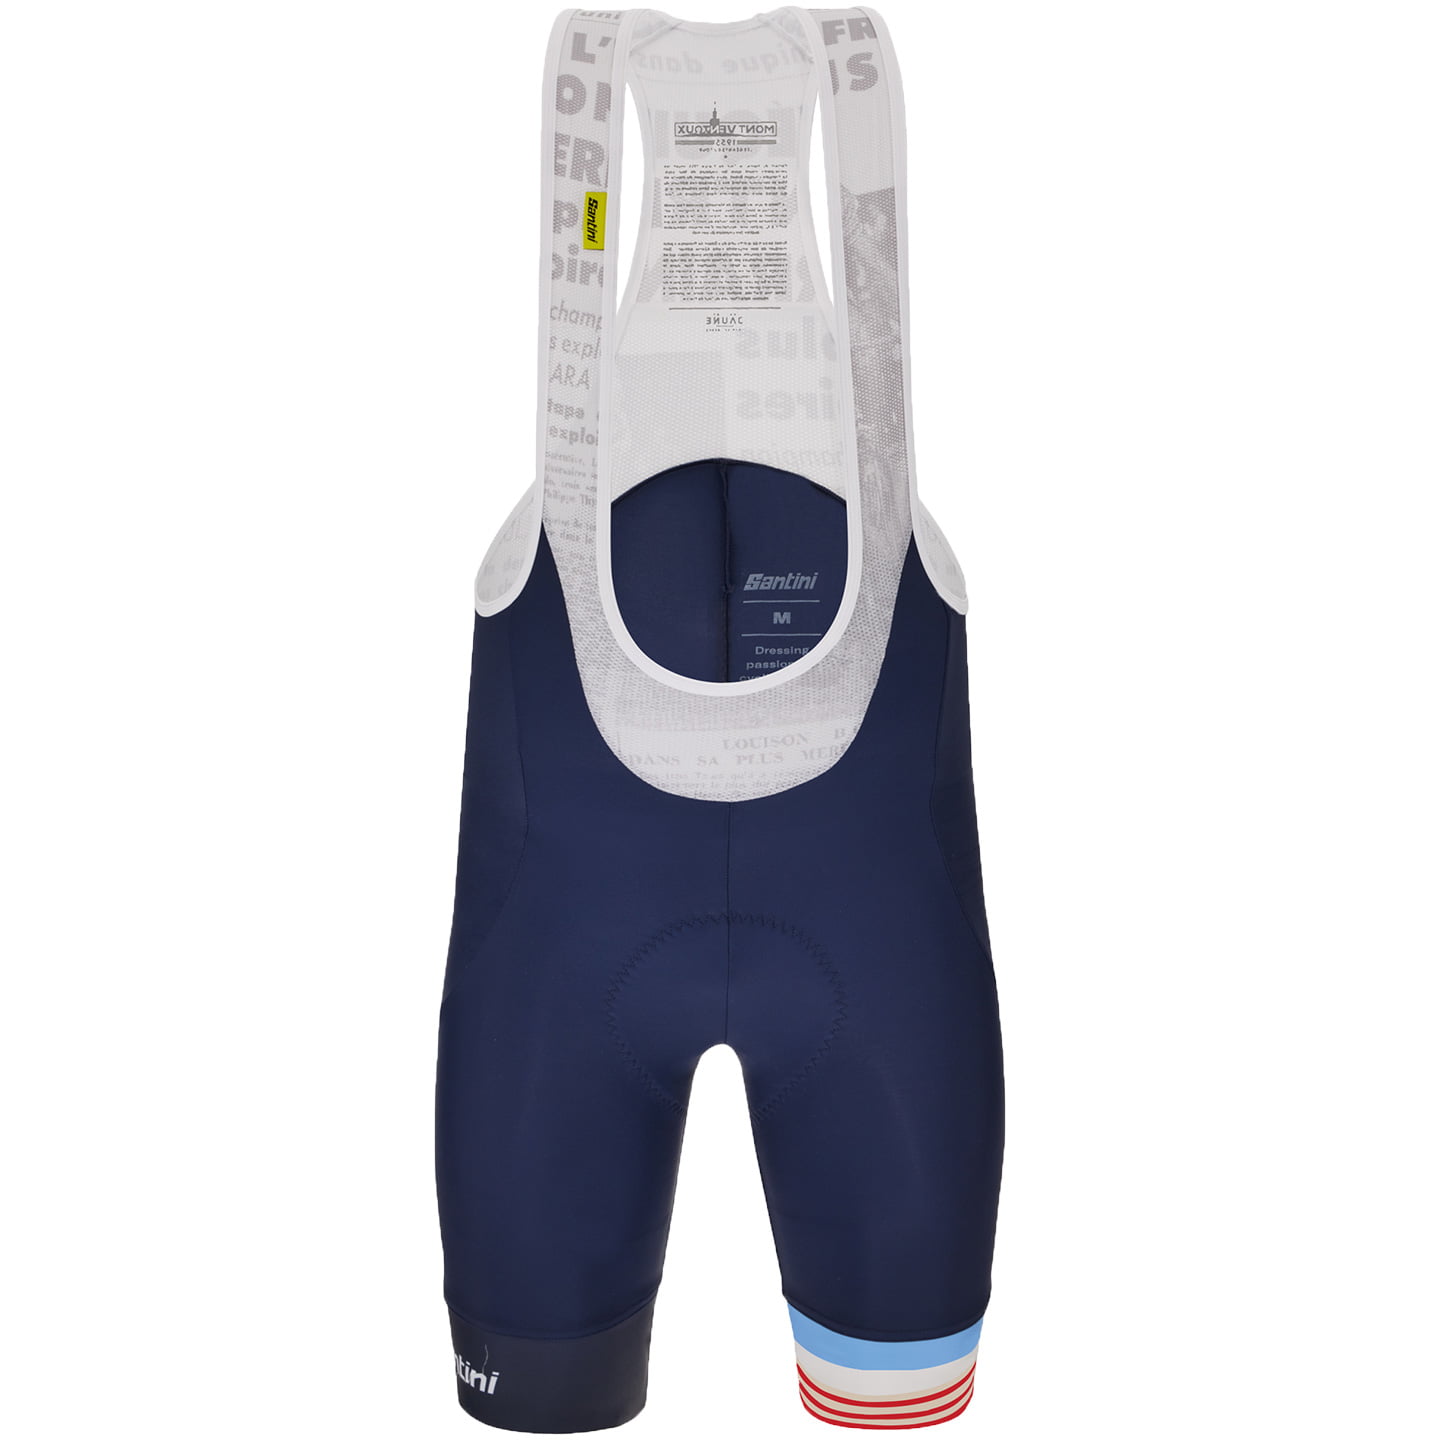 TOUR DE FRANCE Bib Shorts Le Maillot Jaune Mont Ventoux 2024, for men, size XL, Cycle trousers, Cycle clothing